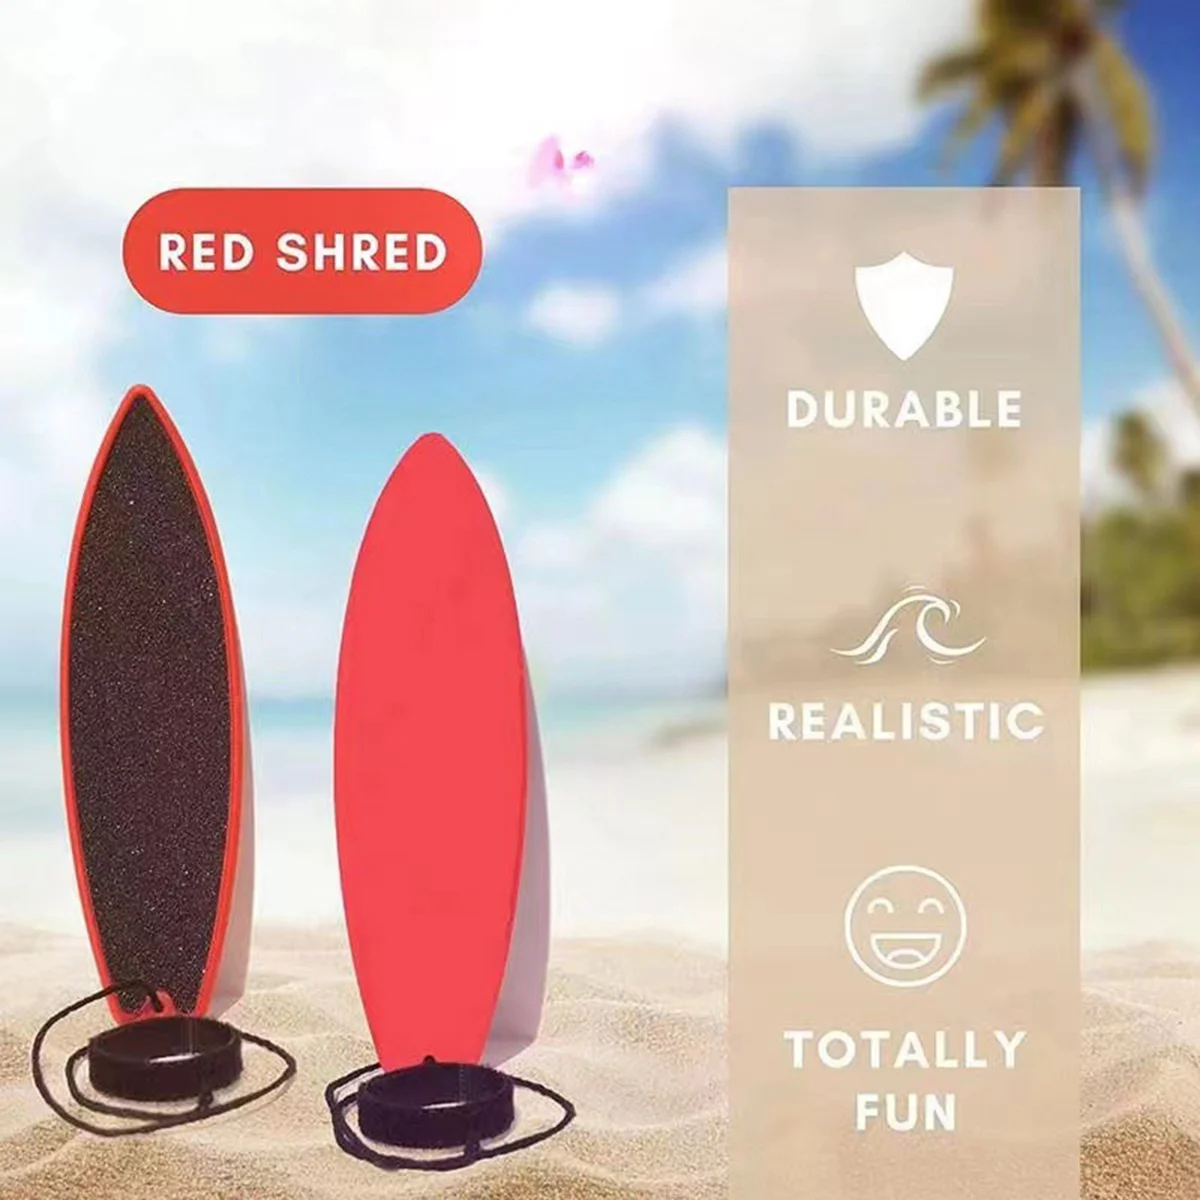 Fingertip Surfboard Toy para crianças, Finger Surf Boards,Fingertip Surfboard para adultos, Adolescentes, Meninos, Meninas, Hone Surfer Skills, 4Pack